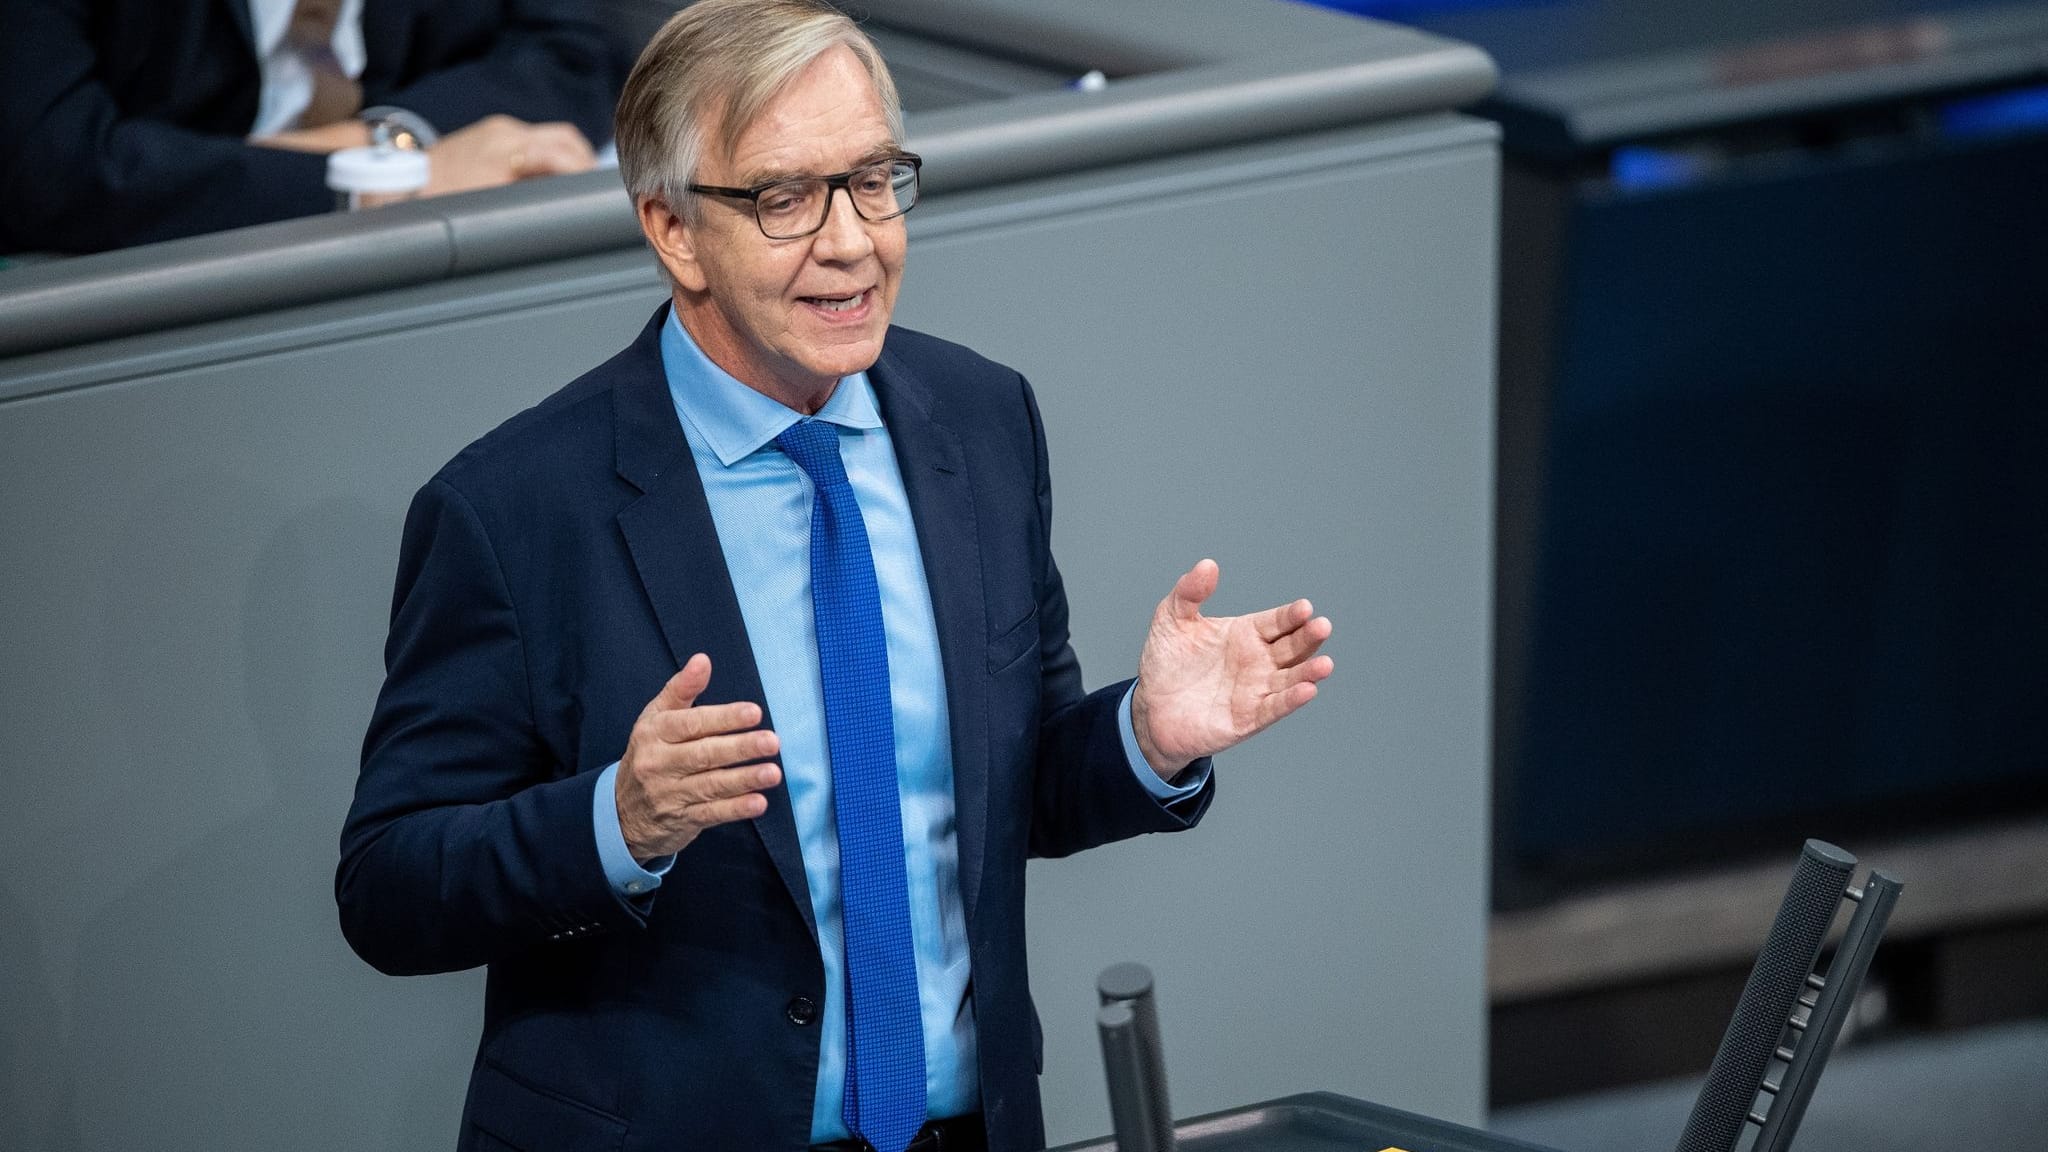 Parteien | Linke stellen Antrag auf Gruppen-Bildung im Bundestag